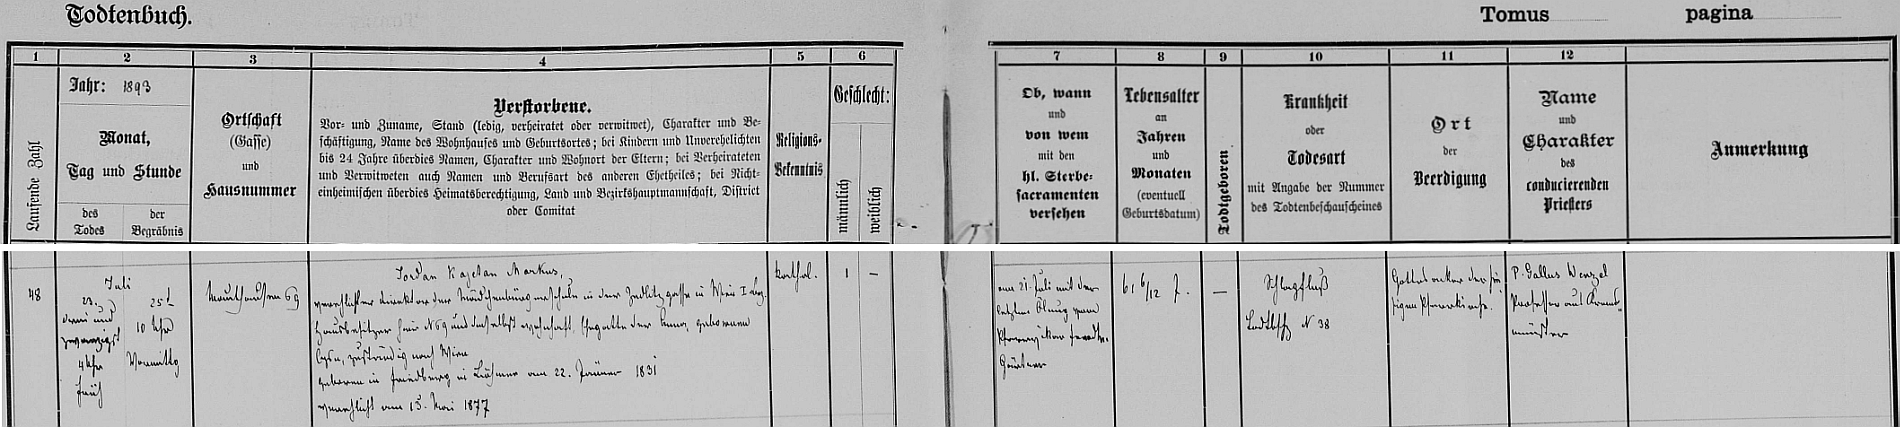 Záznam o jeho úmrtí v knize zemřelých hornorakouské farní obce Mauthausen